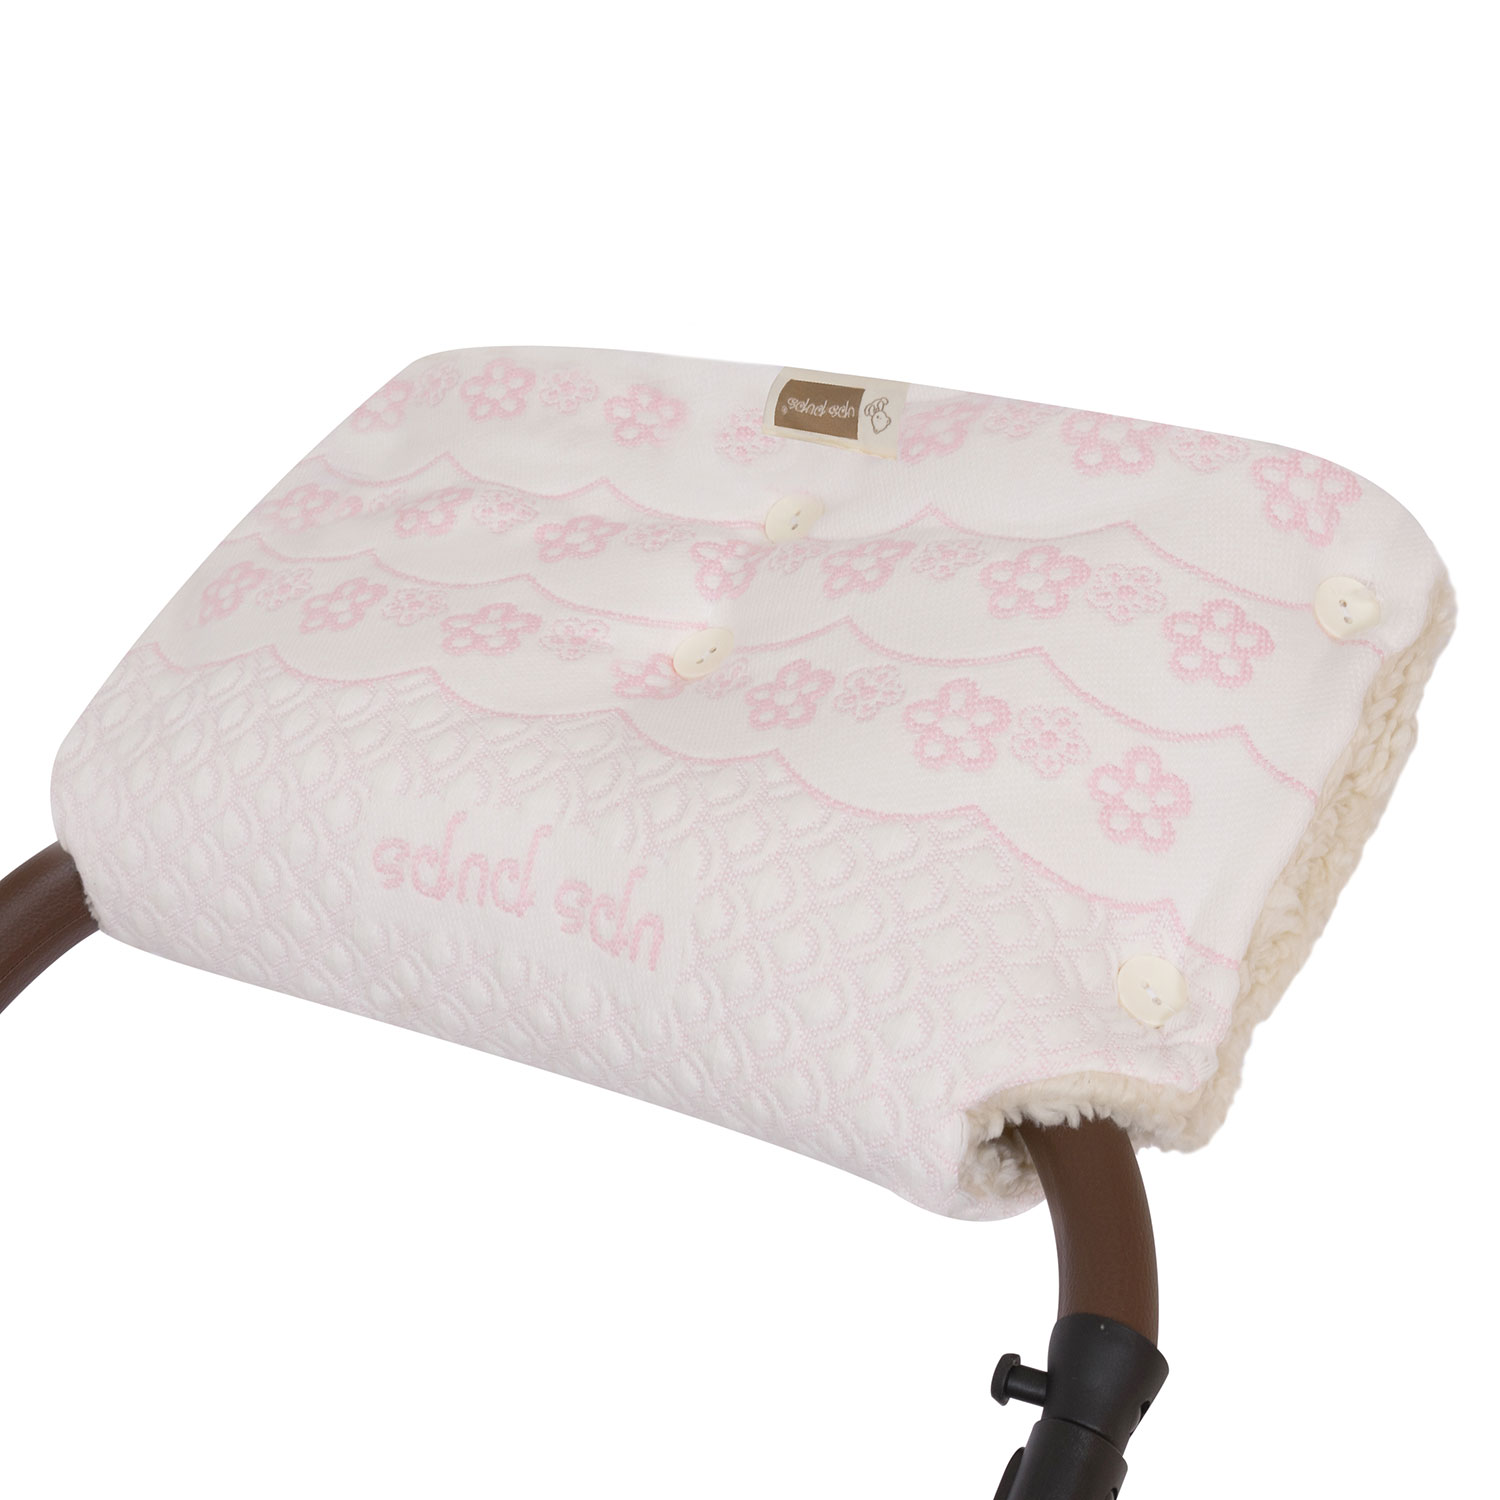 фото Муфта для коляски kidboo цветочки розовая